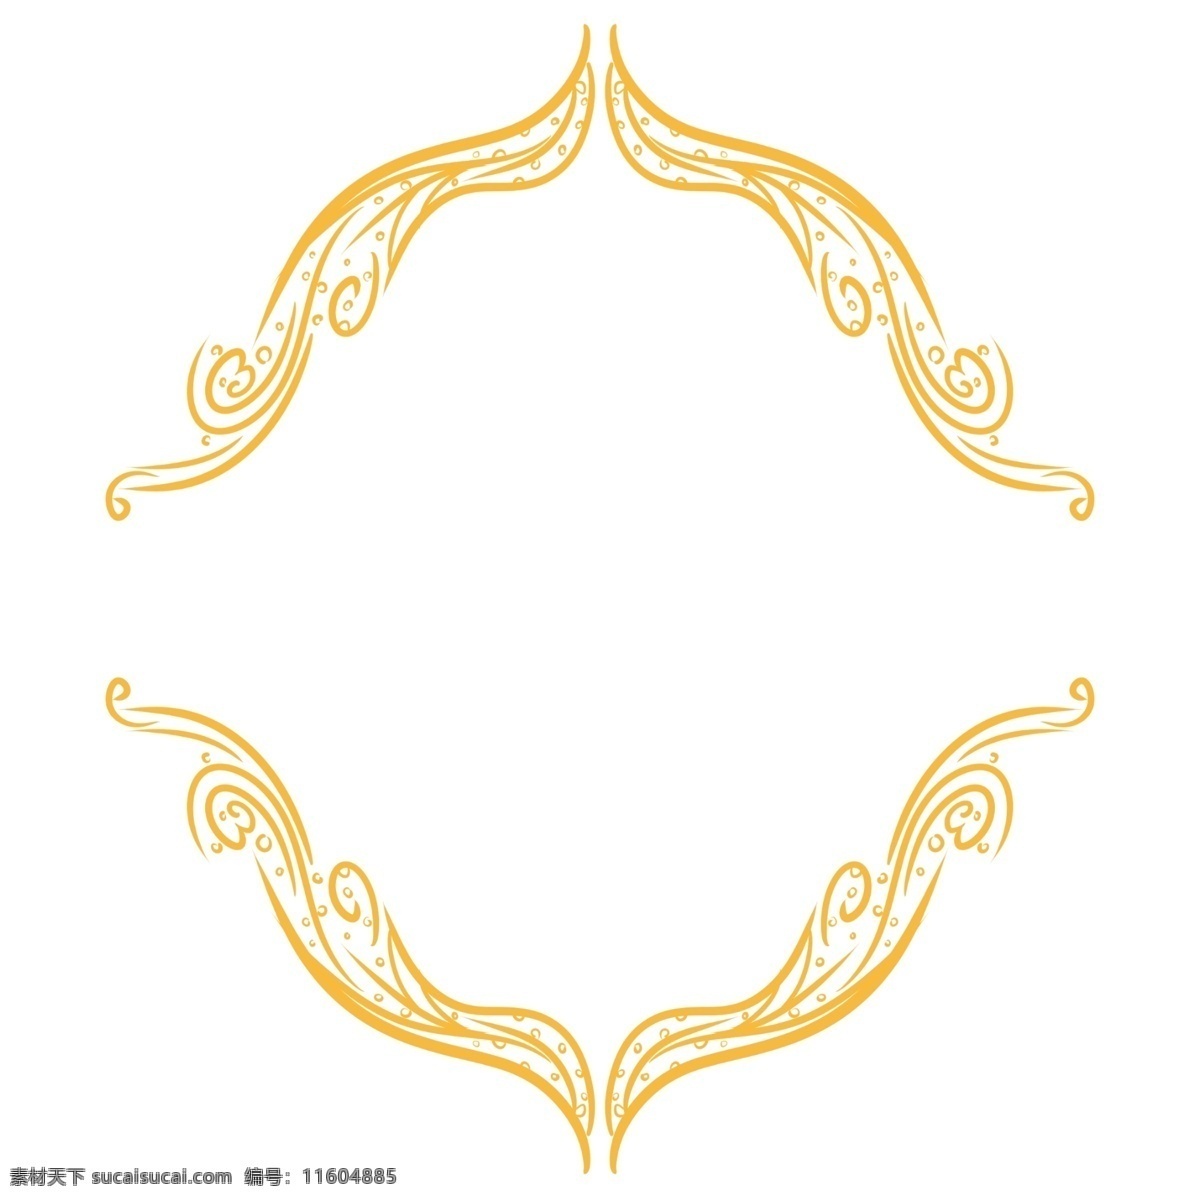 欧式 传统 花纹 边框 古典欧式花纹 欧式植物花纹 植物花纹 金色装饰 欧式传统花纹 欧式边框花纹